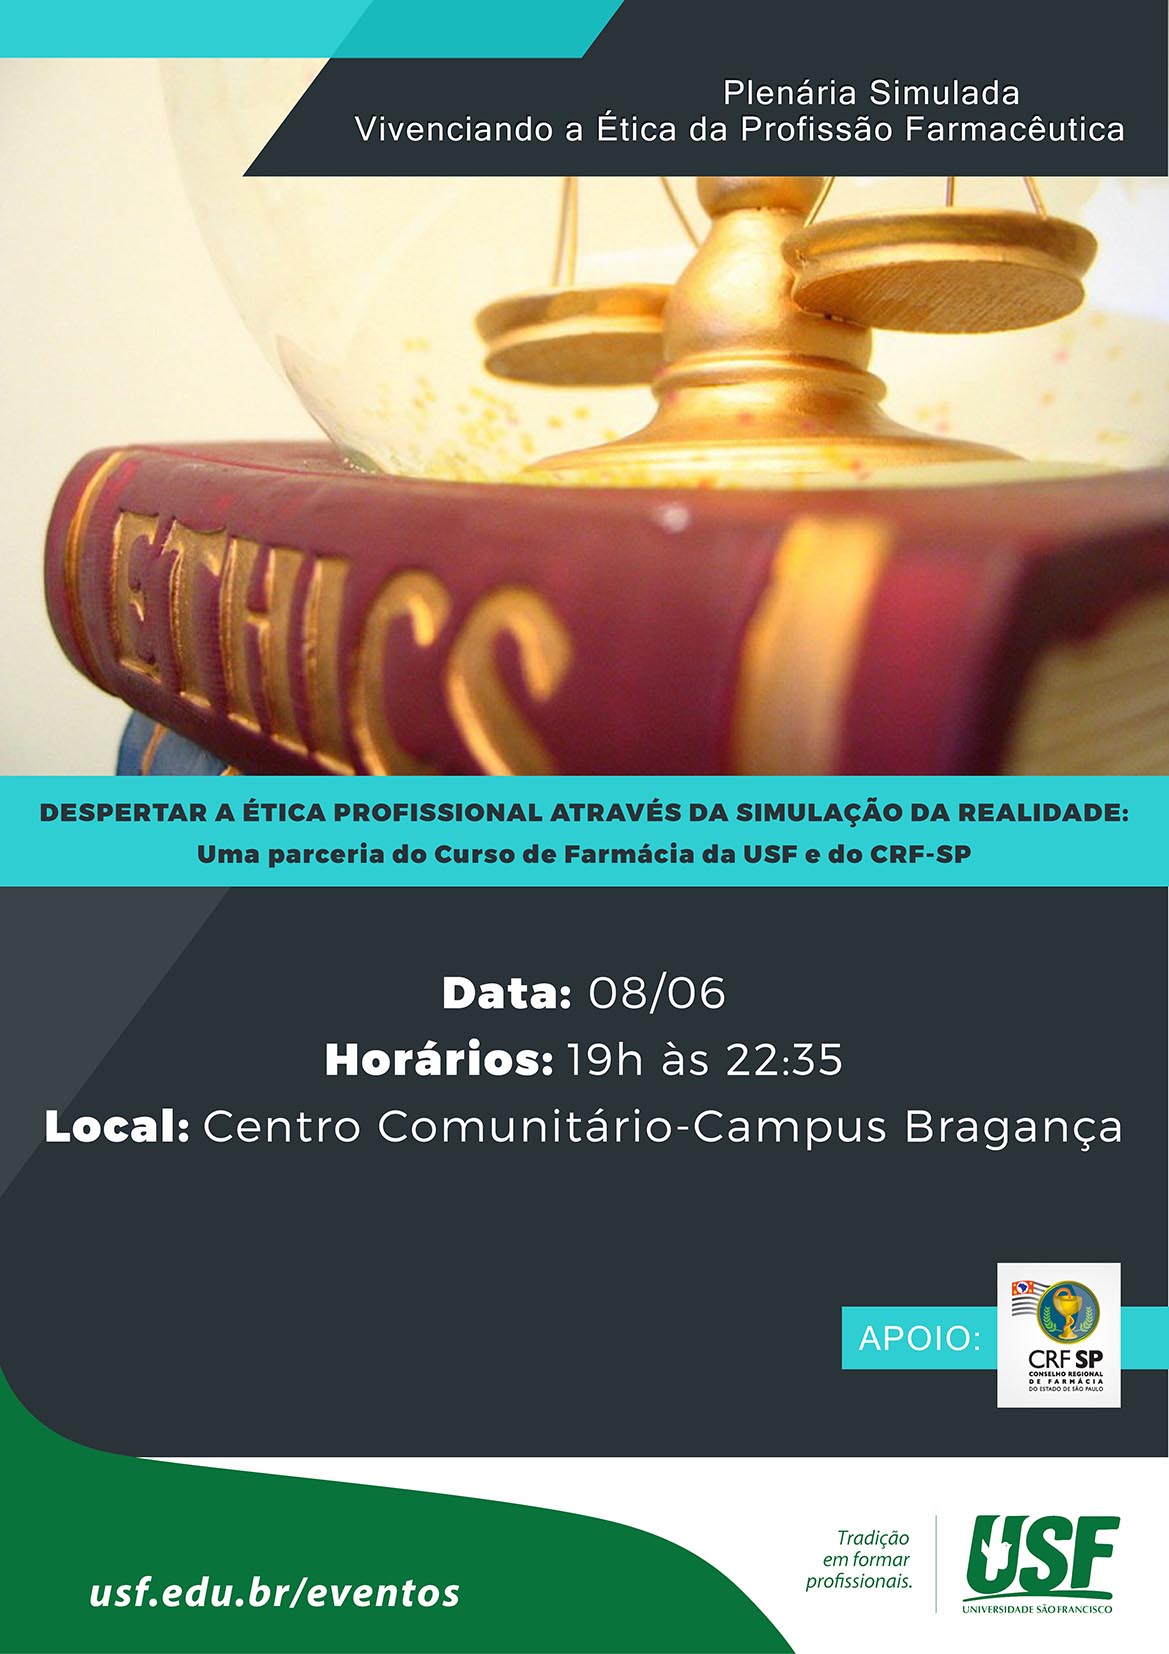 Plenária Simulada - Vivenciando a Ética da Profissão Farmacêutica - Campus Bragança Paulista 